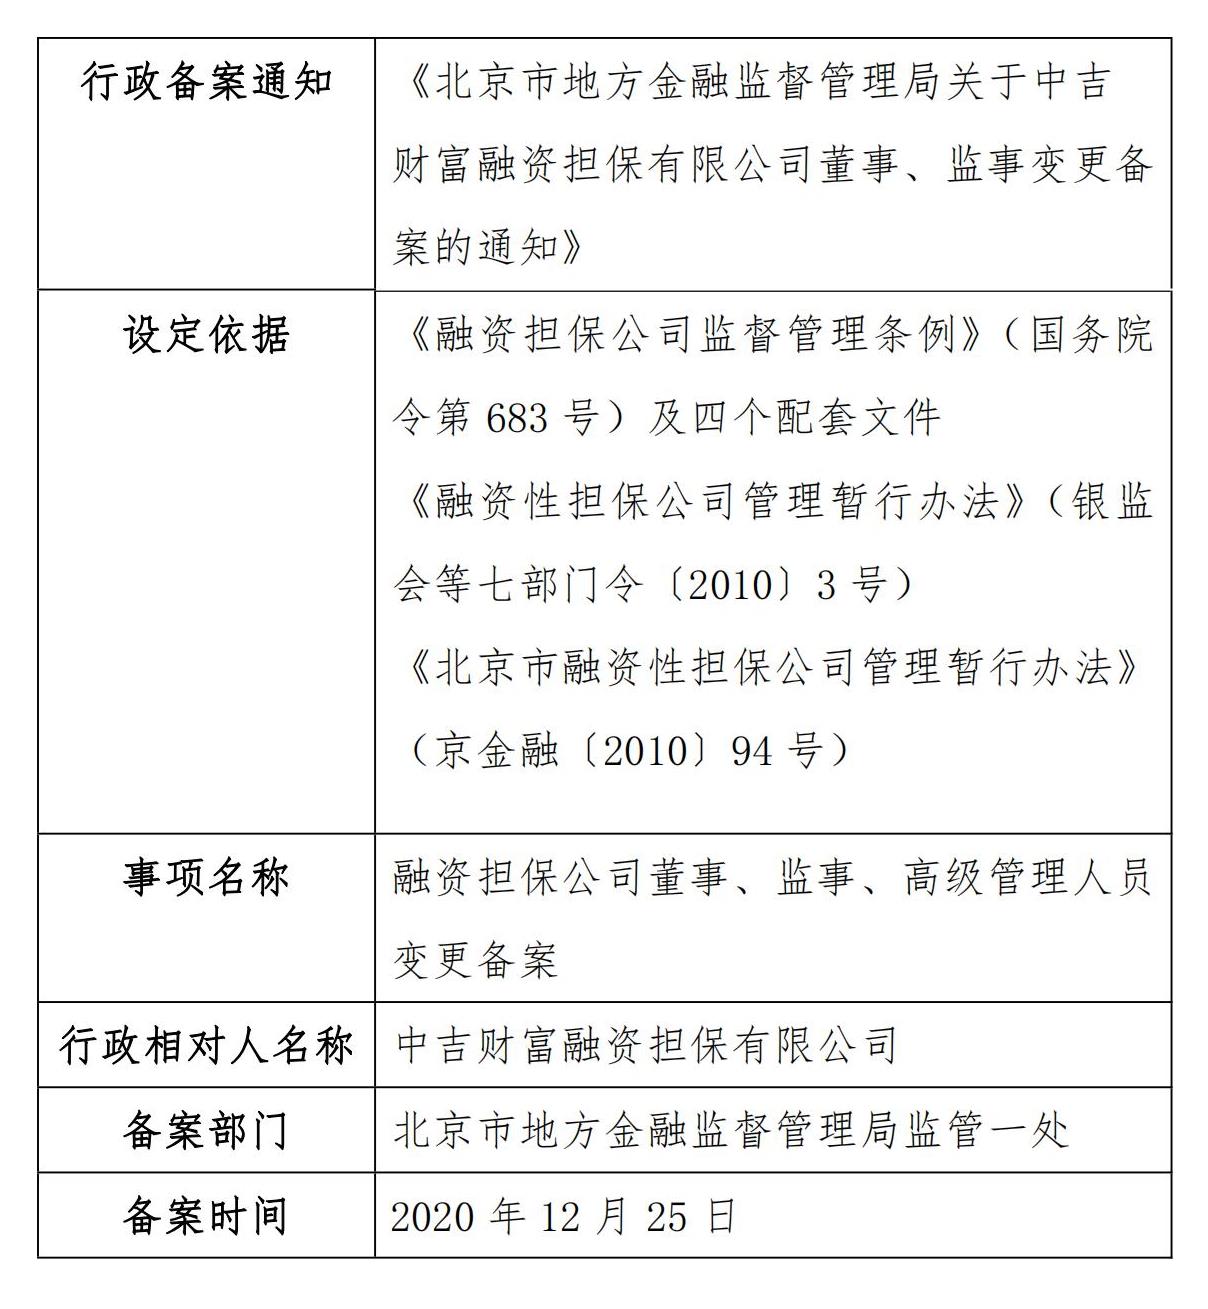 北京市地方金融监督管理局关于中吉财富融资担保有限公司董事、监事变更备案的通知